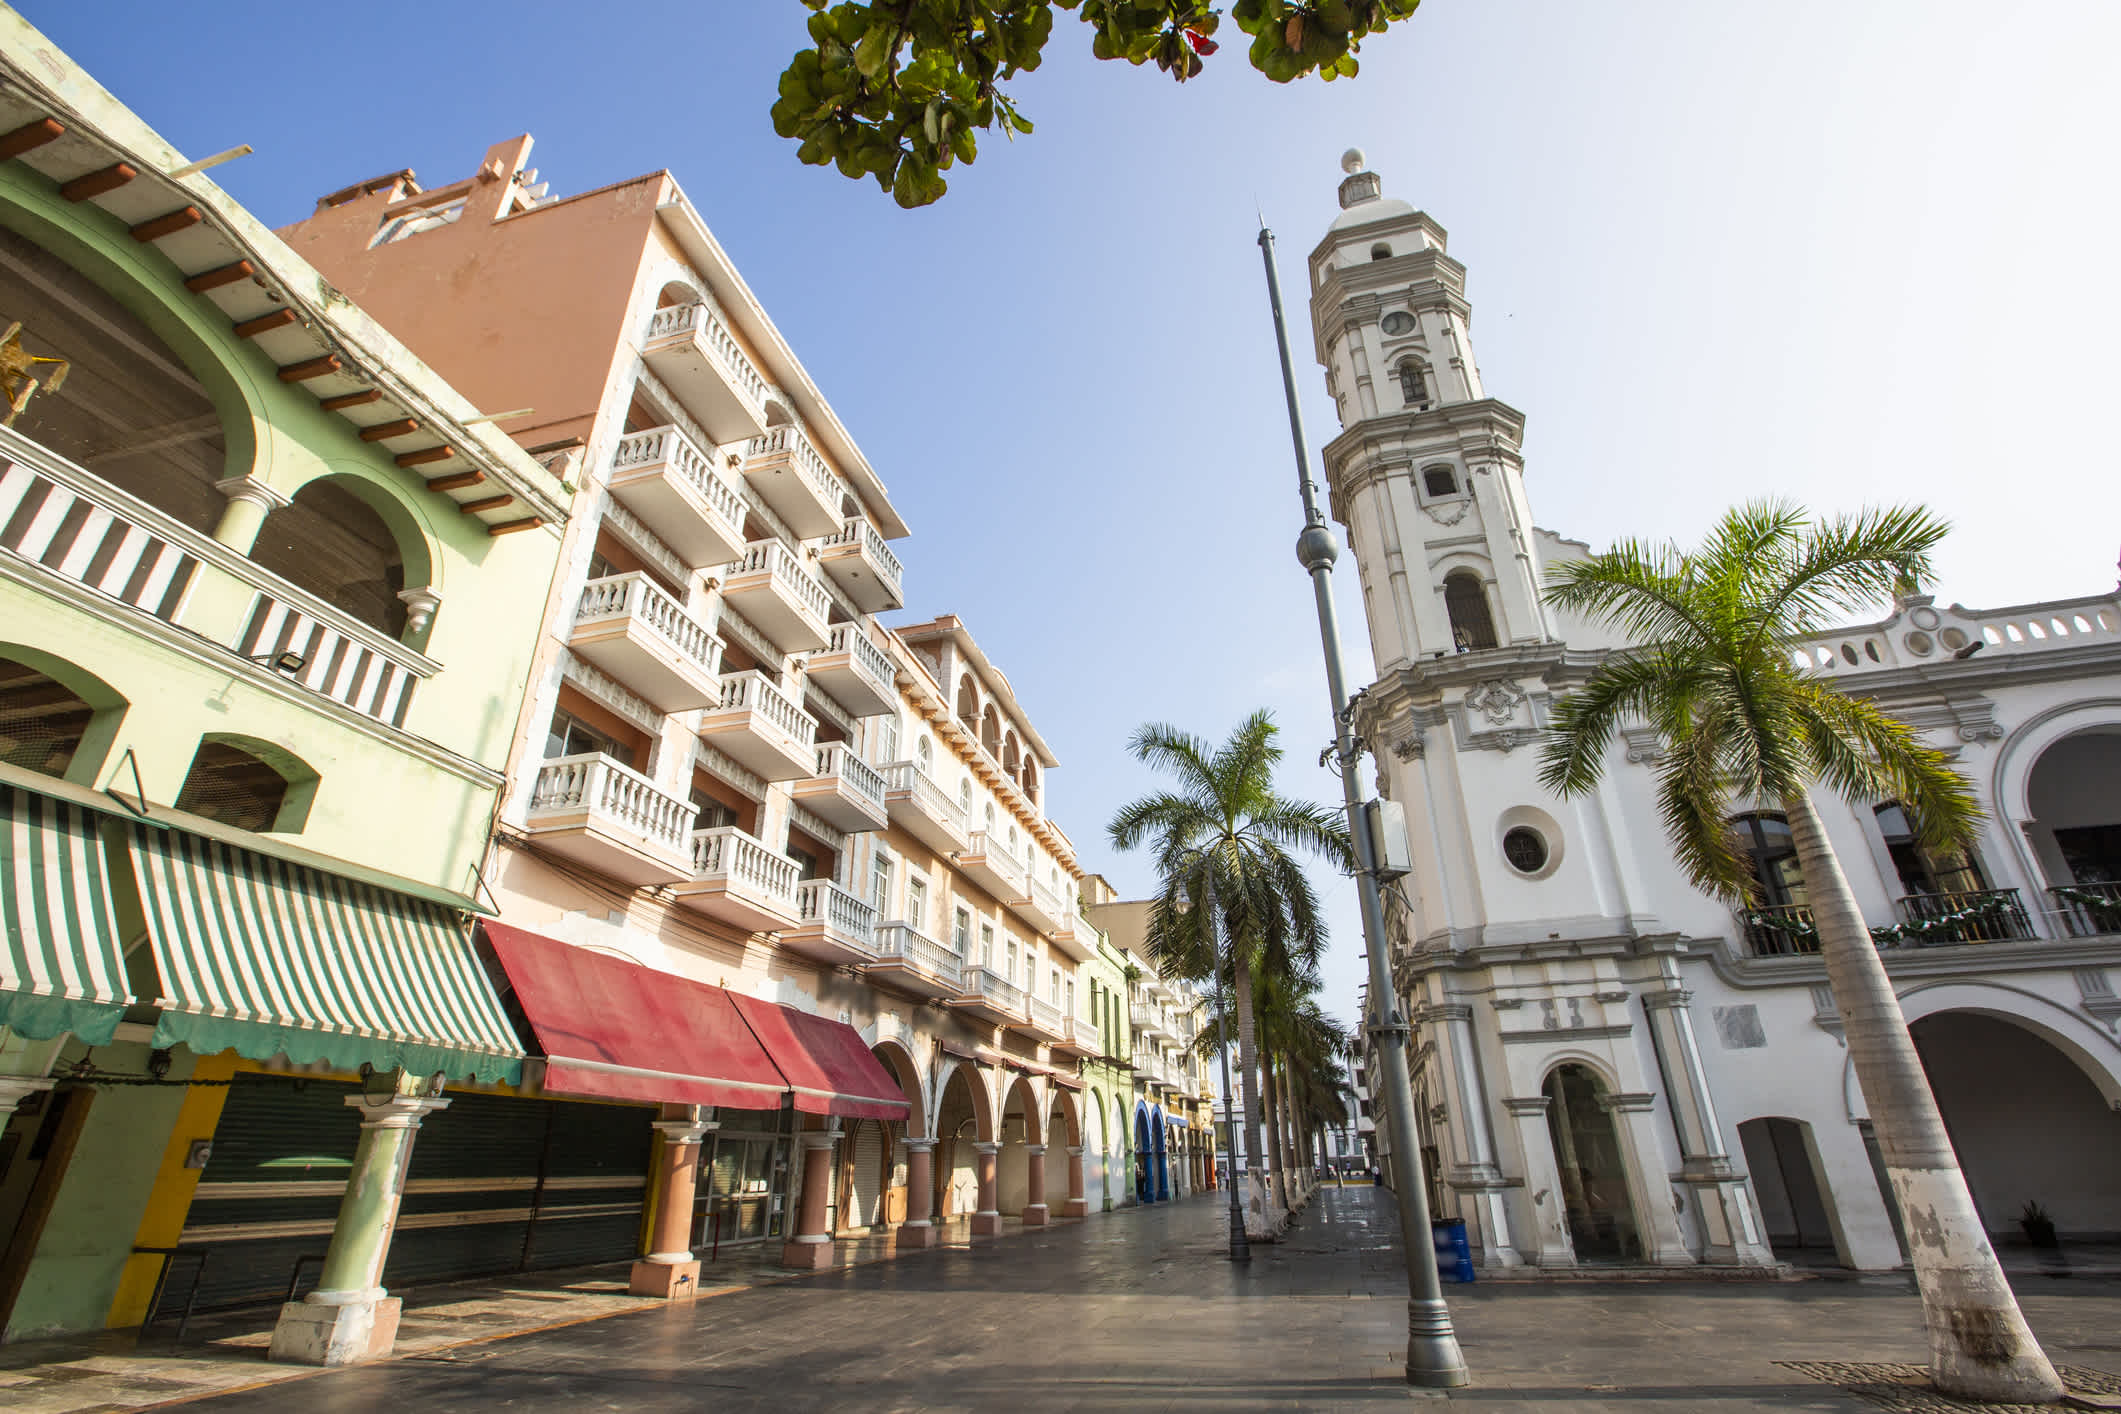 Vue de la ville du centre historique de Heroica Veracruz, Mexique.